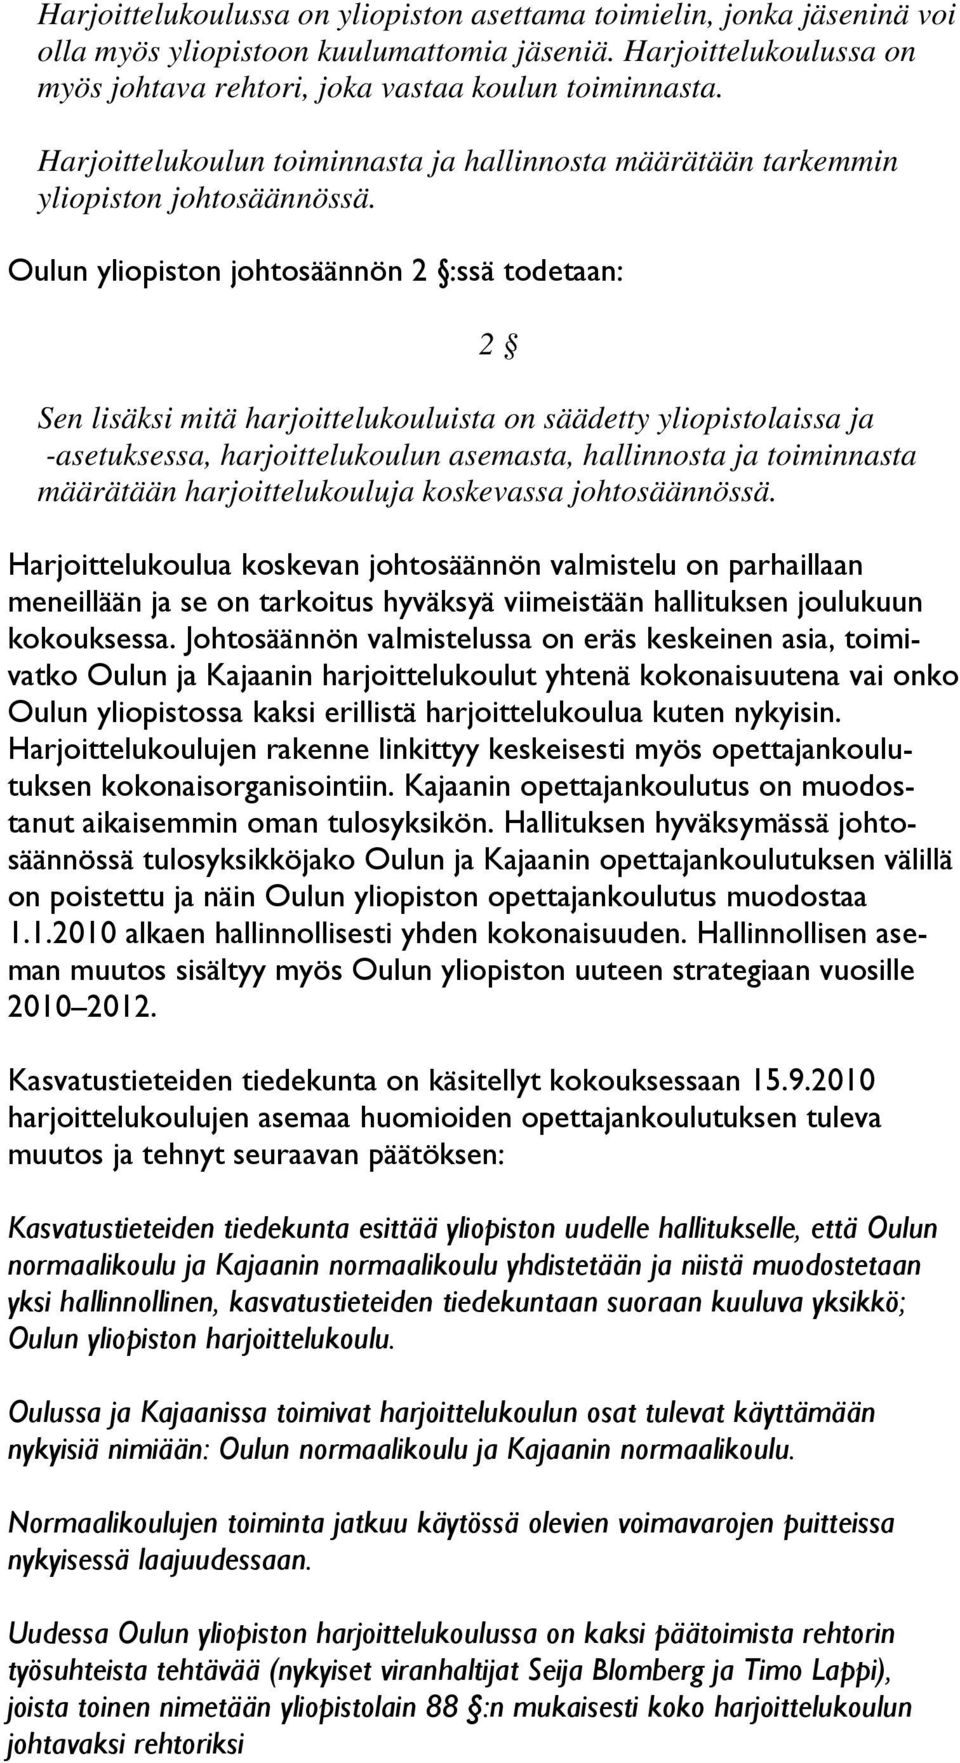 Oulun yliopiston johtosäännön 2 :ssä todetaan: Sen lisäksi mitä harjoittelukouluista on säädetty yliopistolaissa ja -asetuksessa, harjoittelukoulun asemasta, hallinnosta ja toiminnasta määrätään